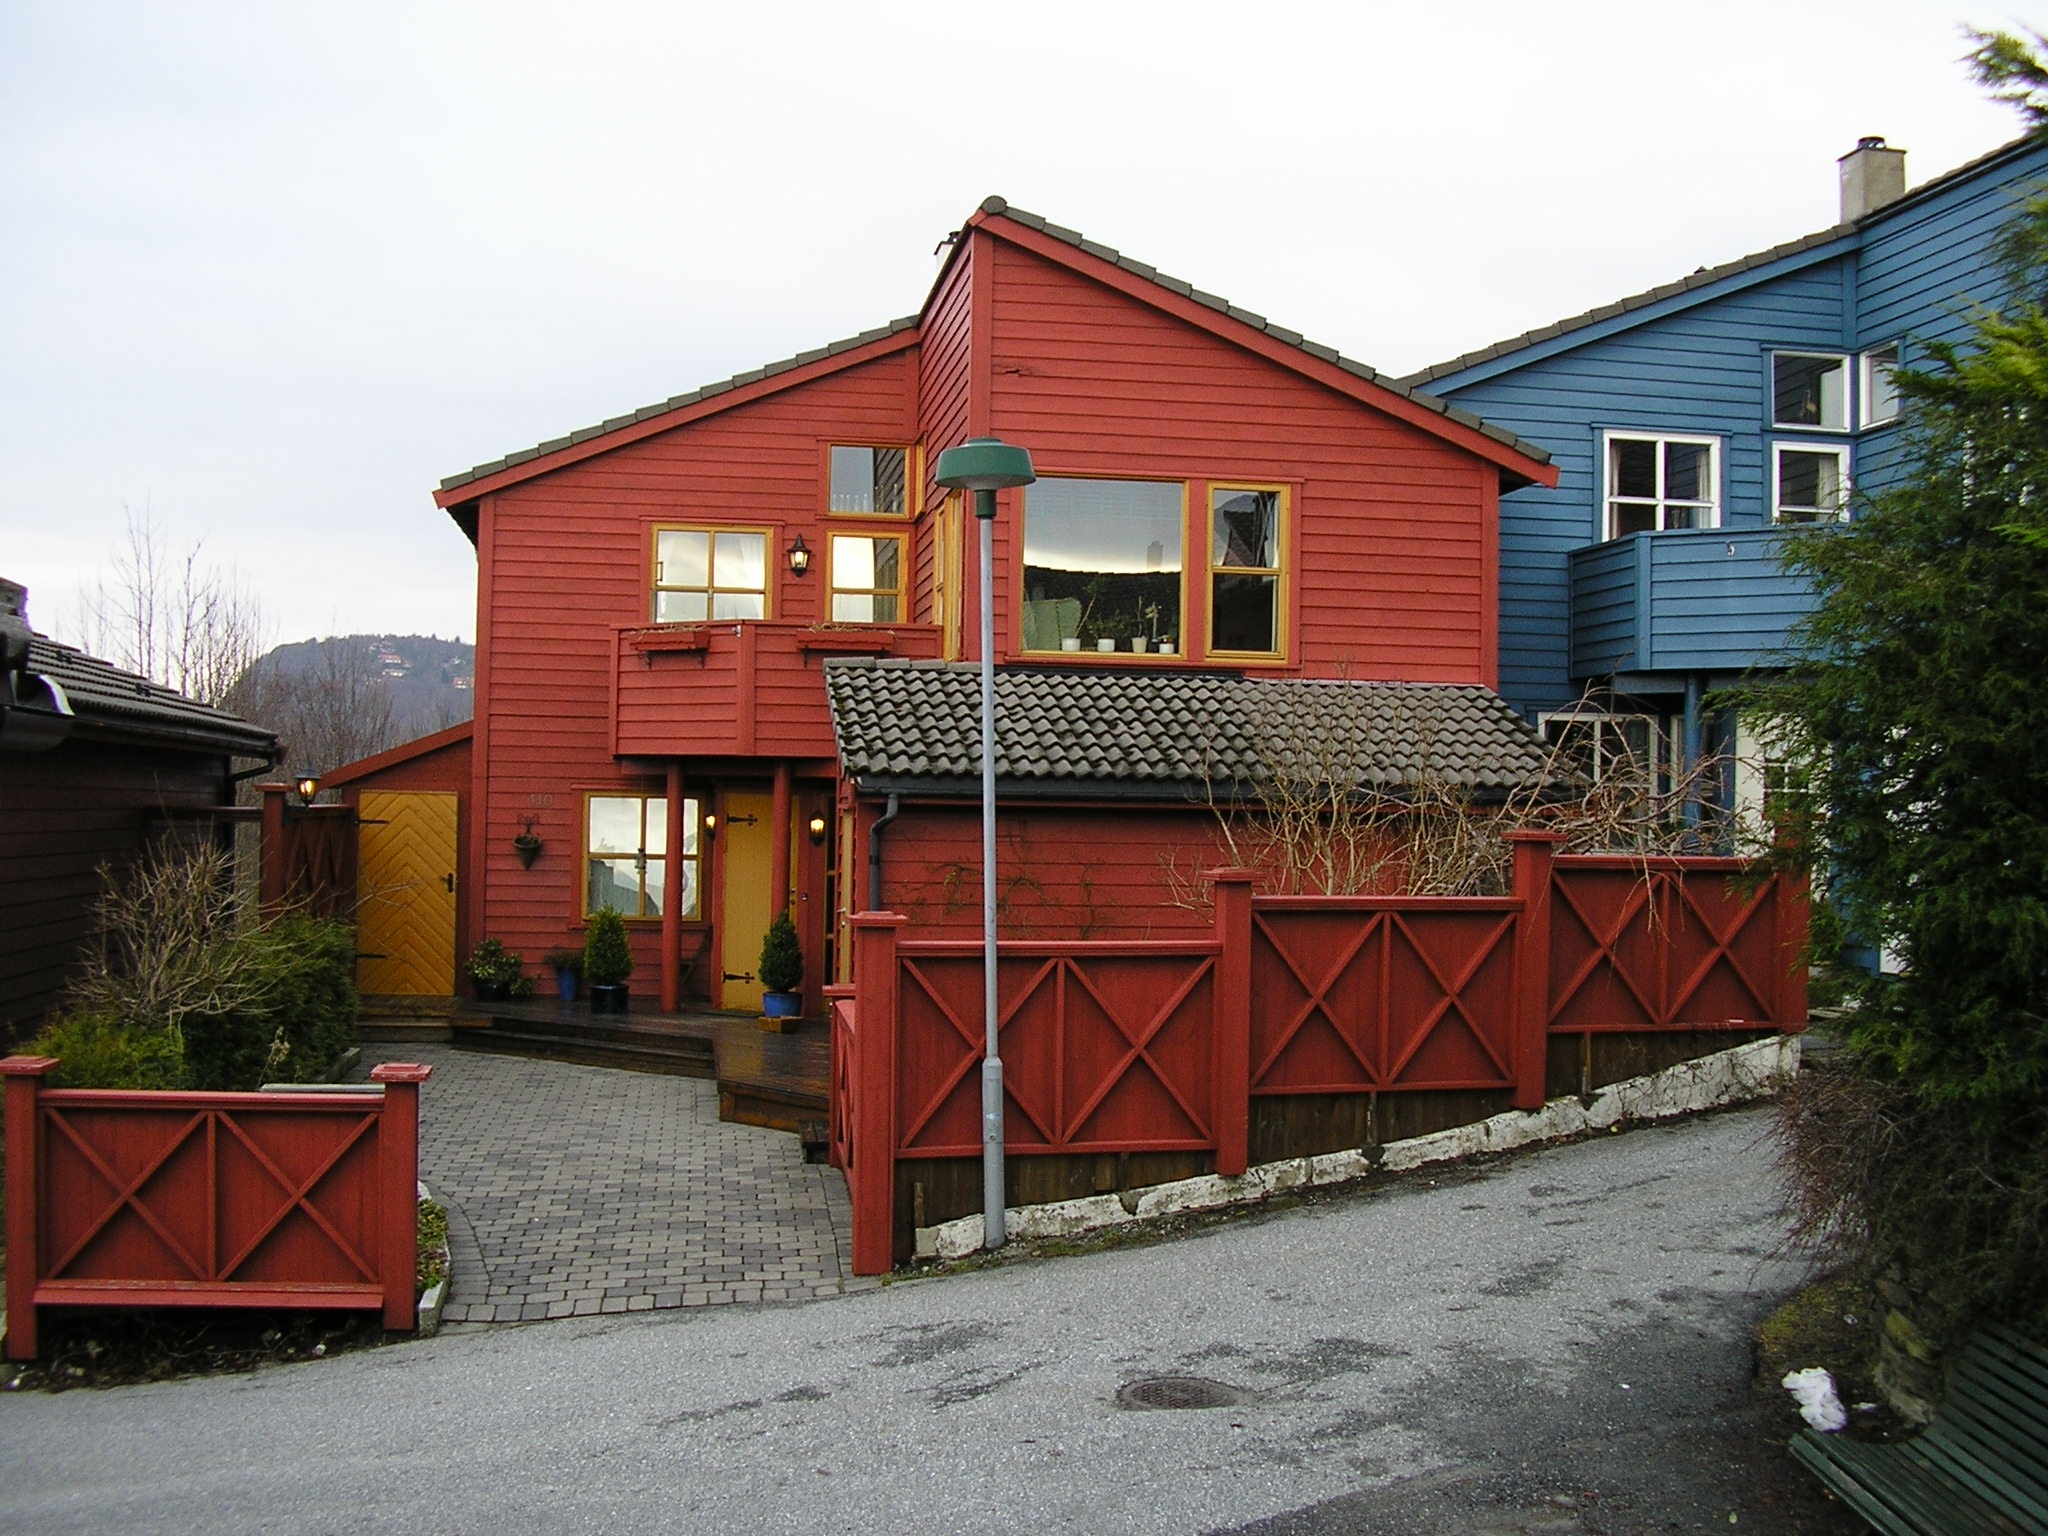 Home in Nesttun, Norway